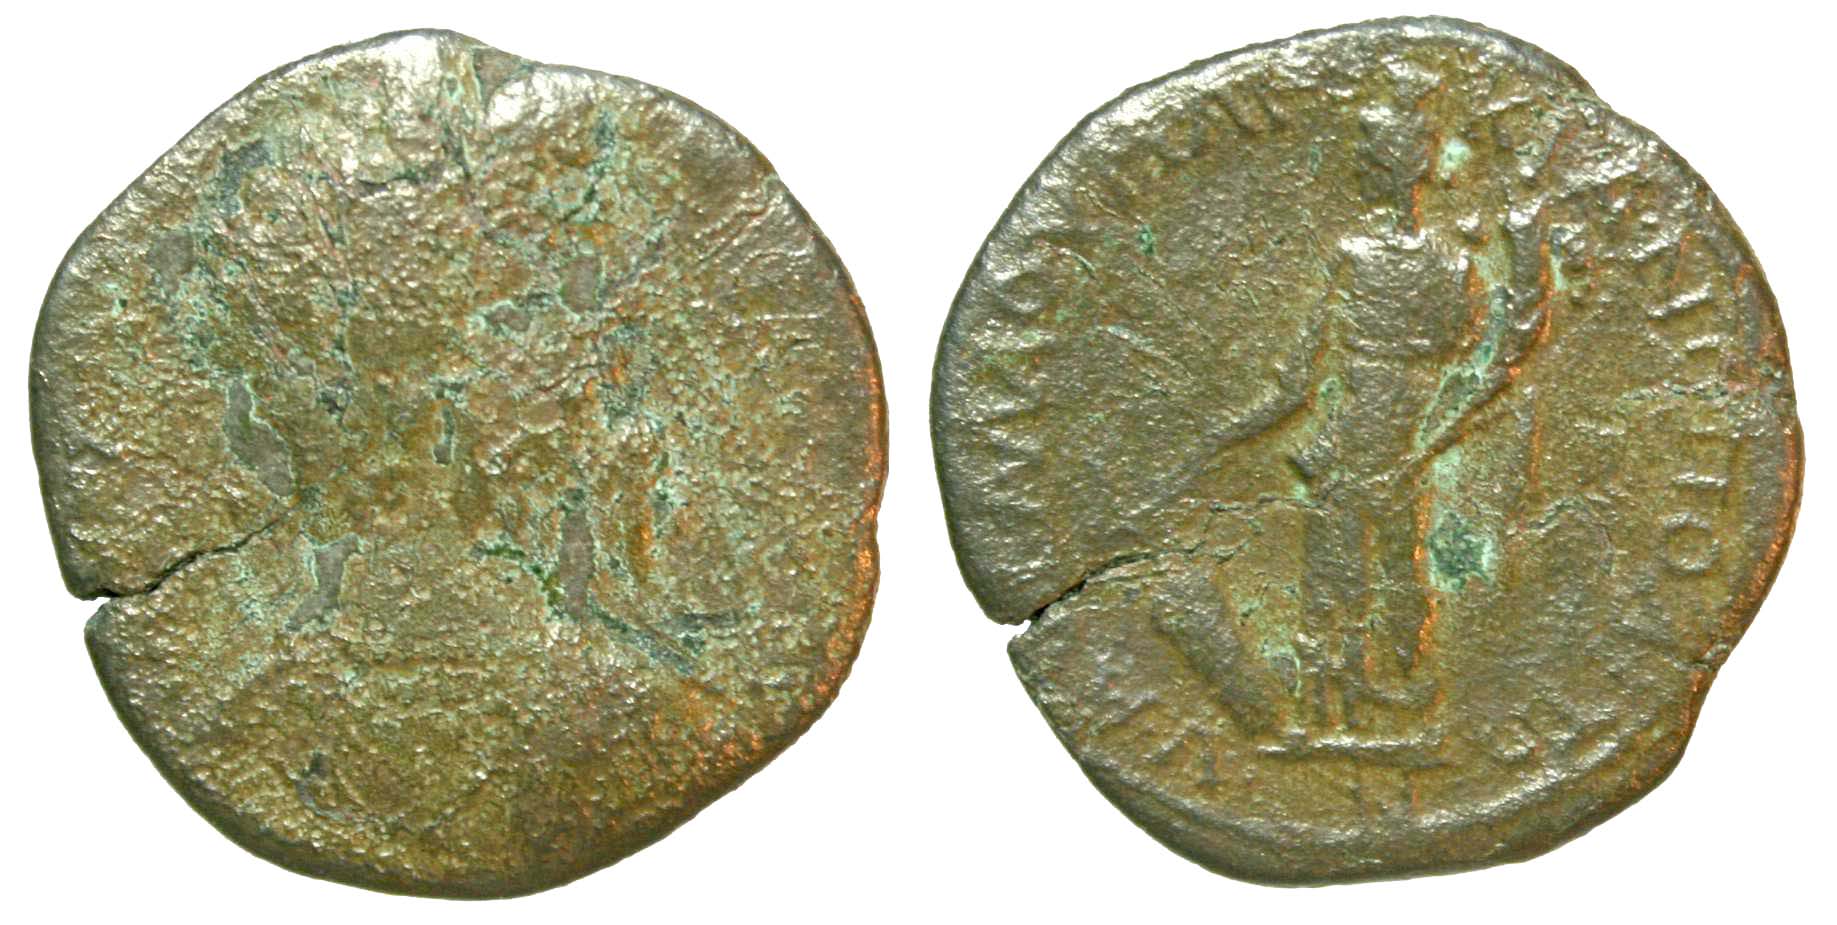 4815 Marcianopolis Moesia Inferior Septimius Severus AE cleaned